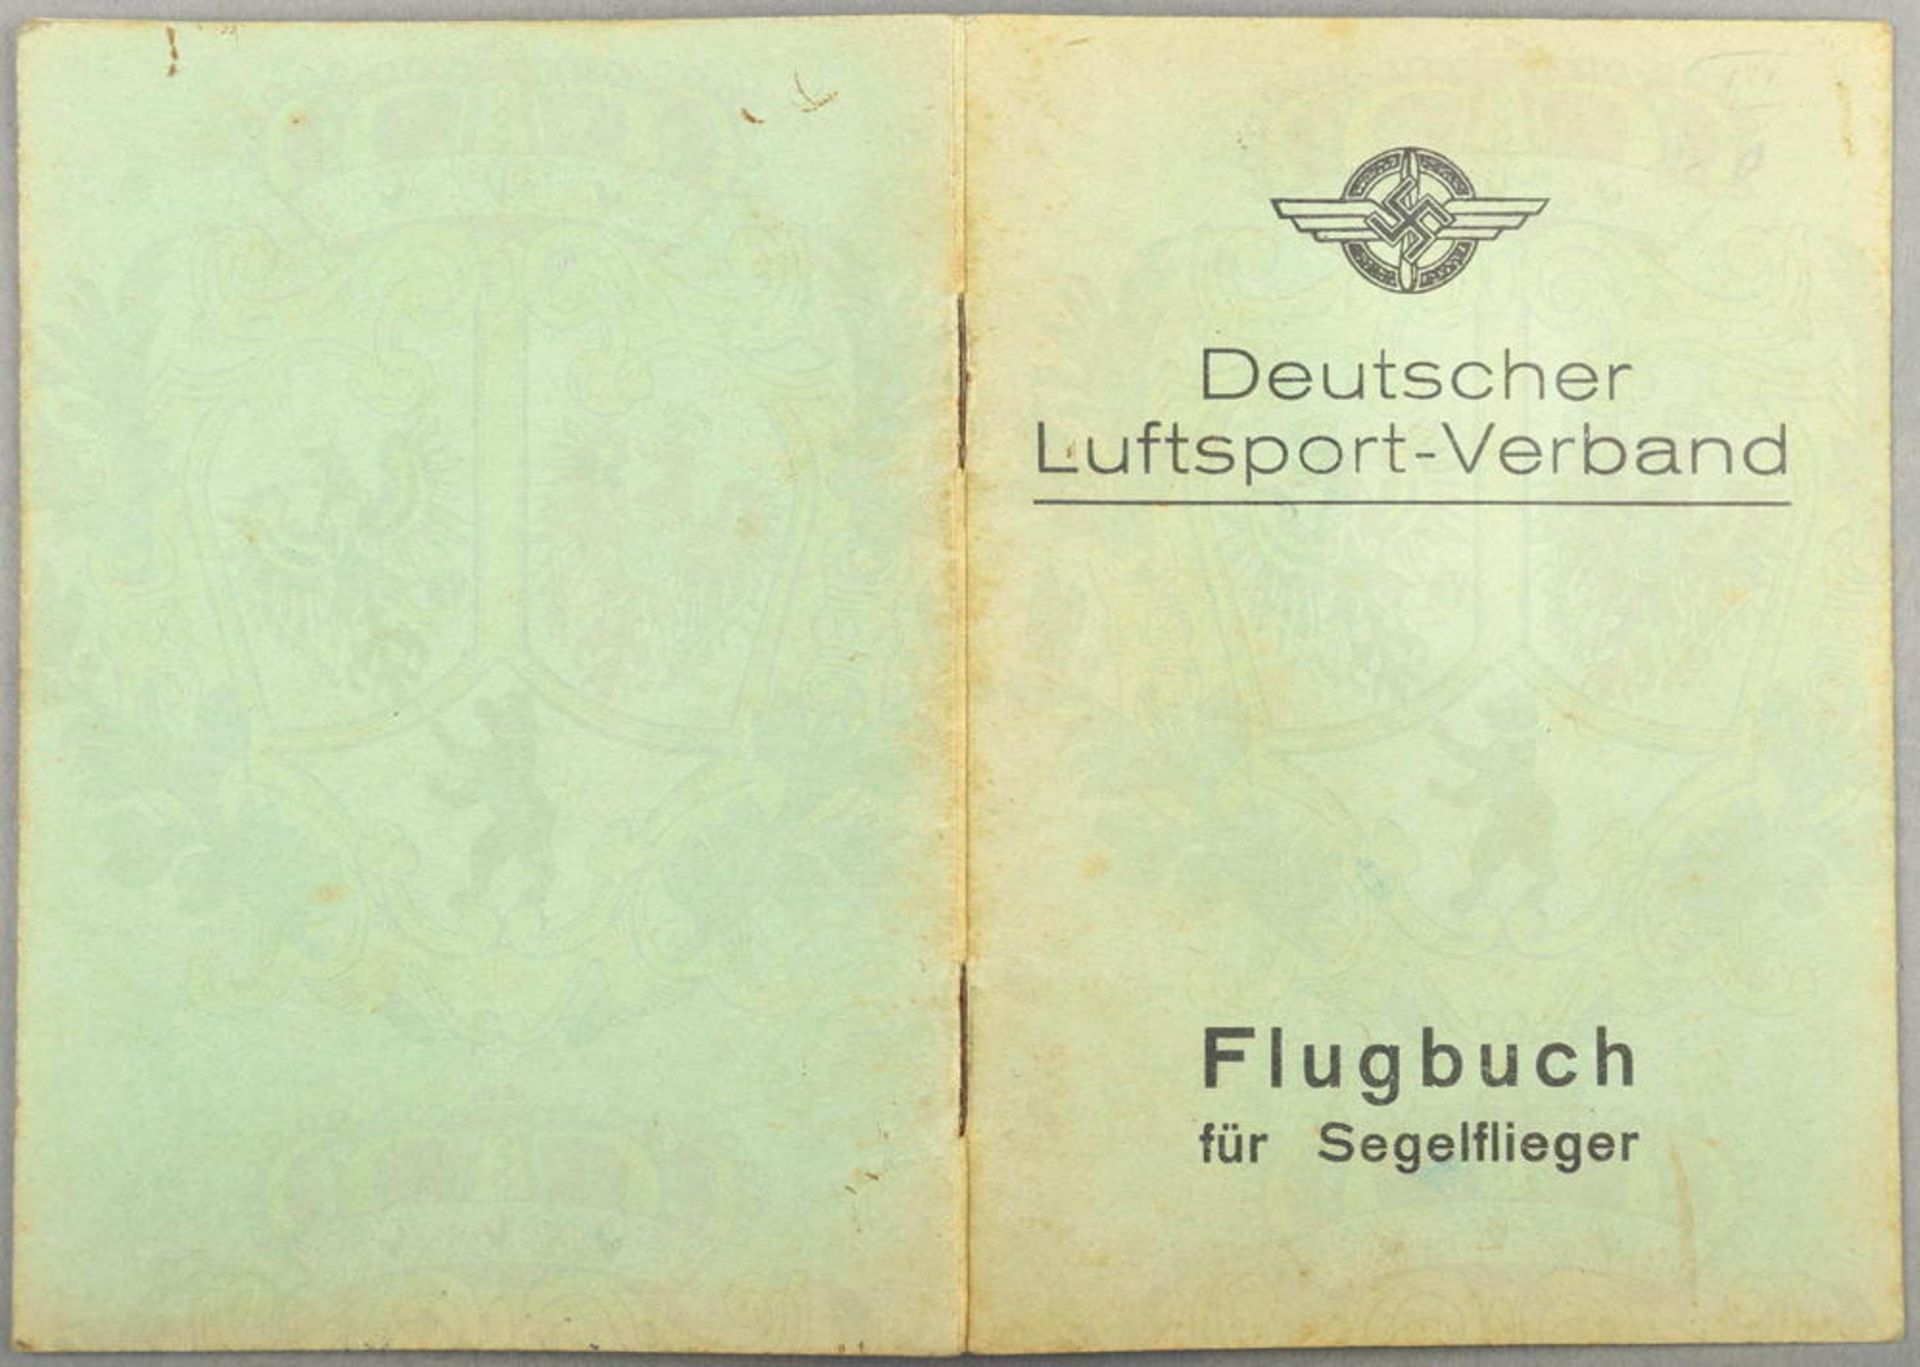 DLV-FLUGBUCH FÜR SEGELFLIEGER, Landesgruppe 10 Dortmund, zahlr. Eintr. 1935-1937, Segelfliegerschule